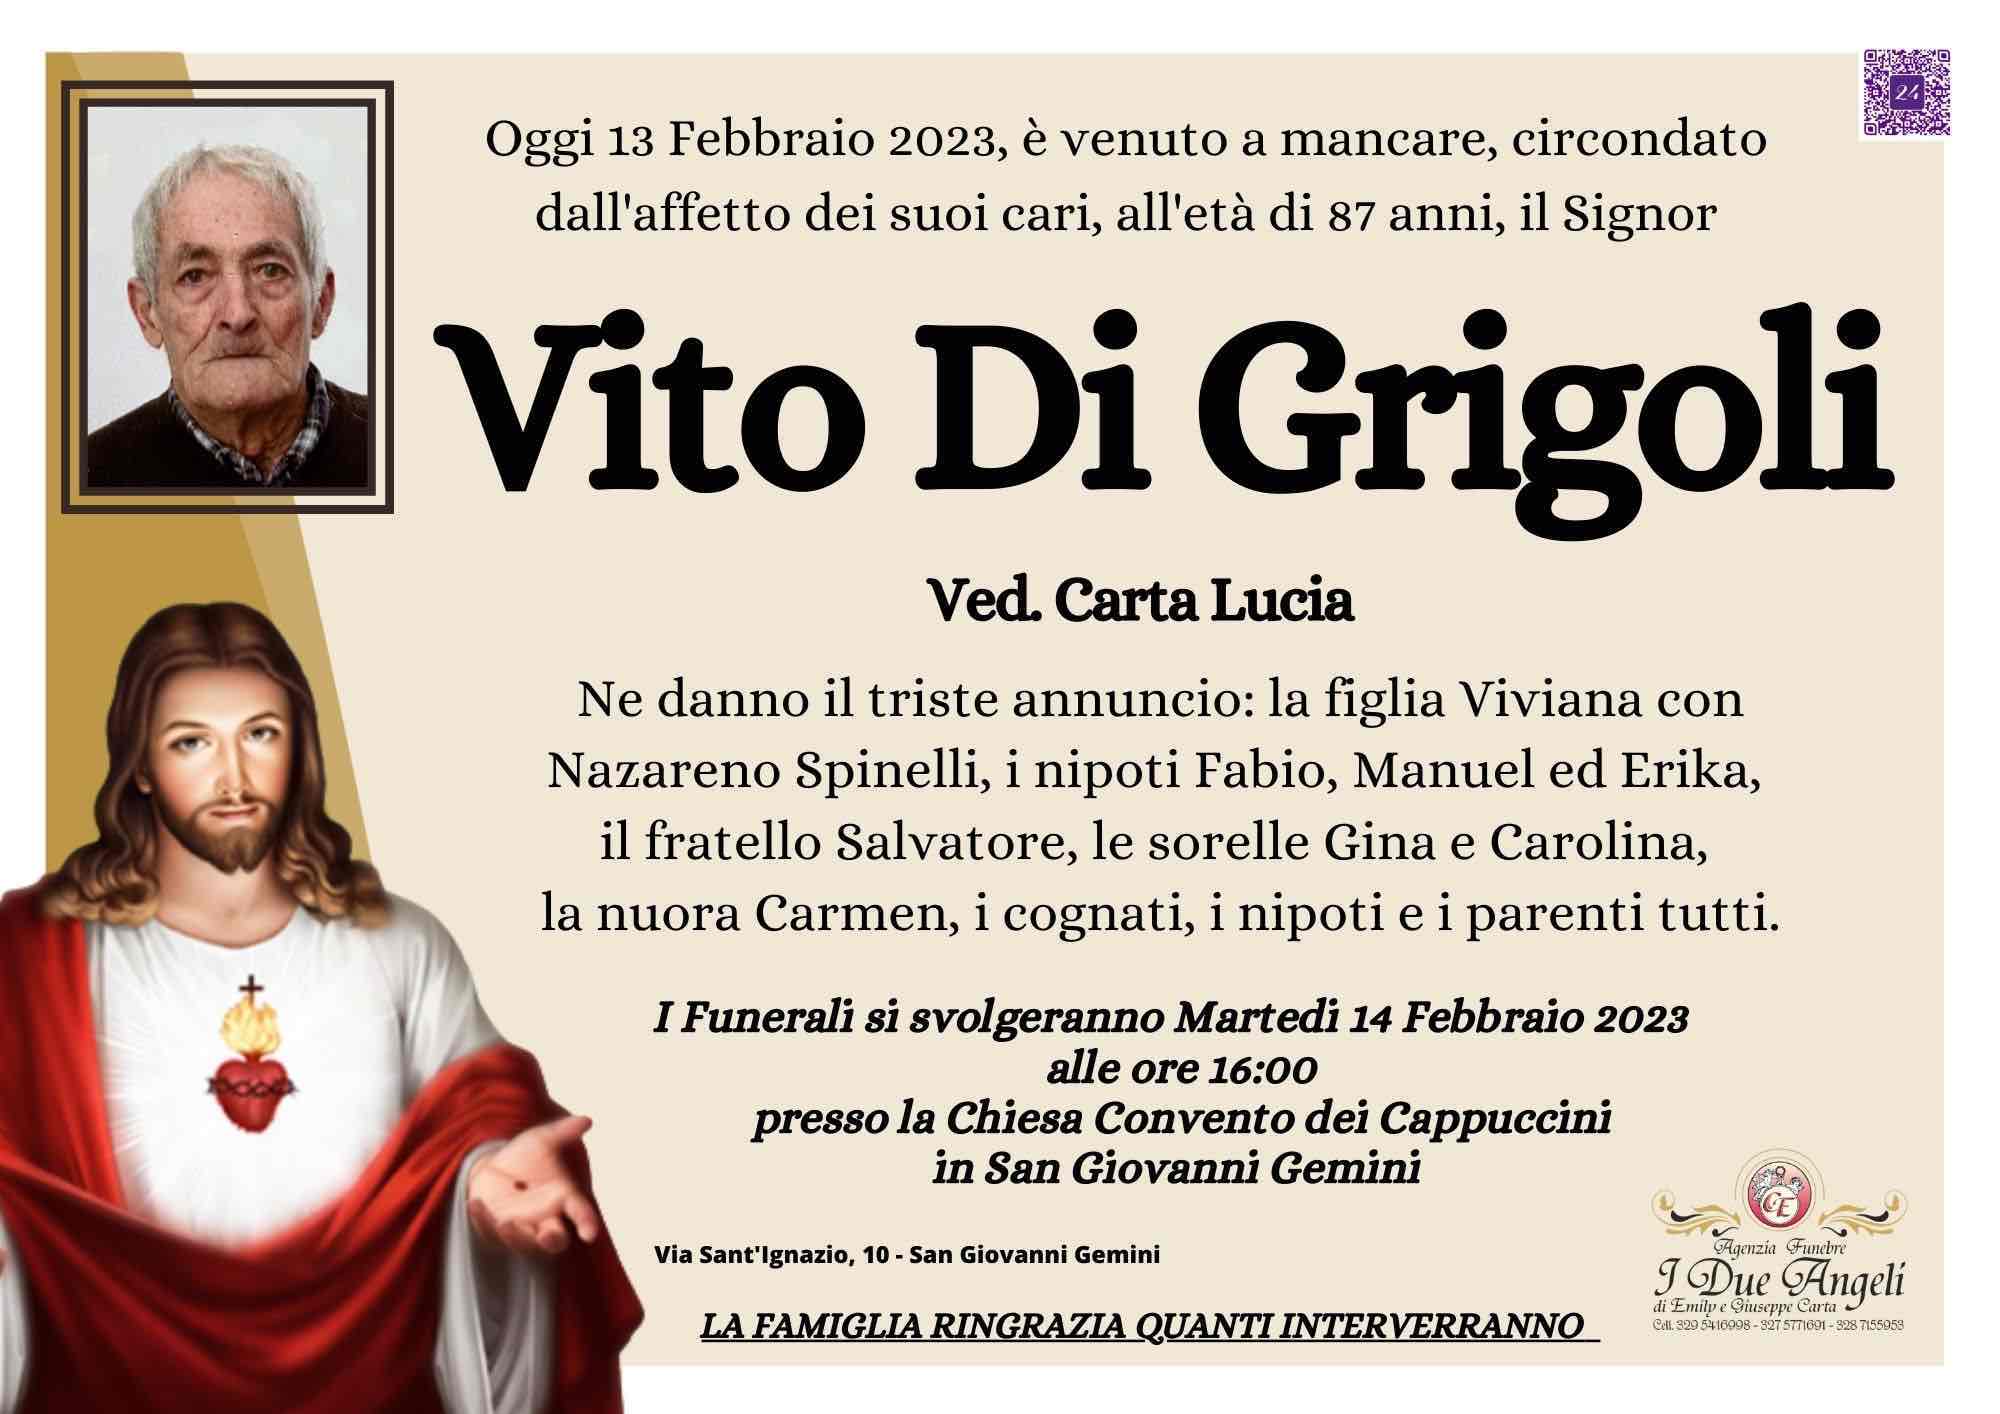 Vito Di Grigoli